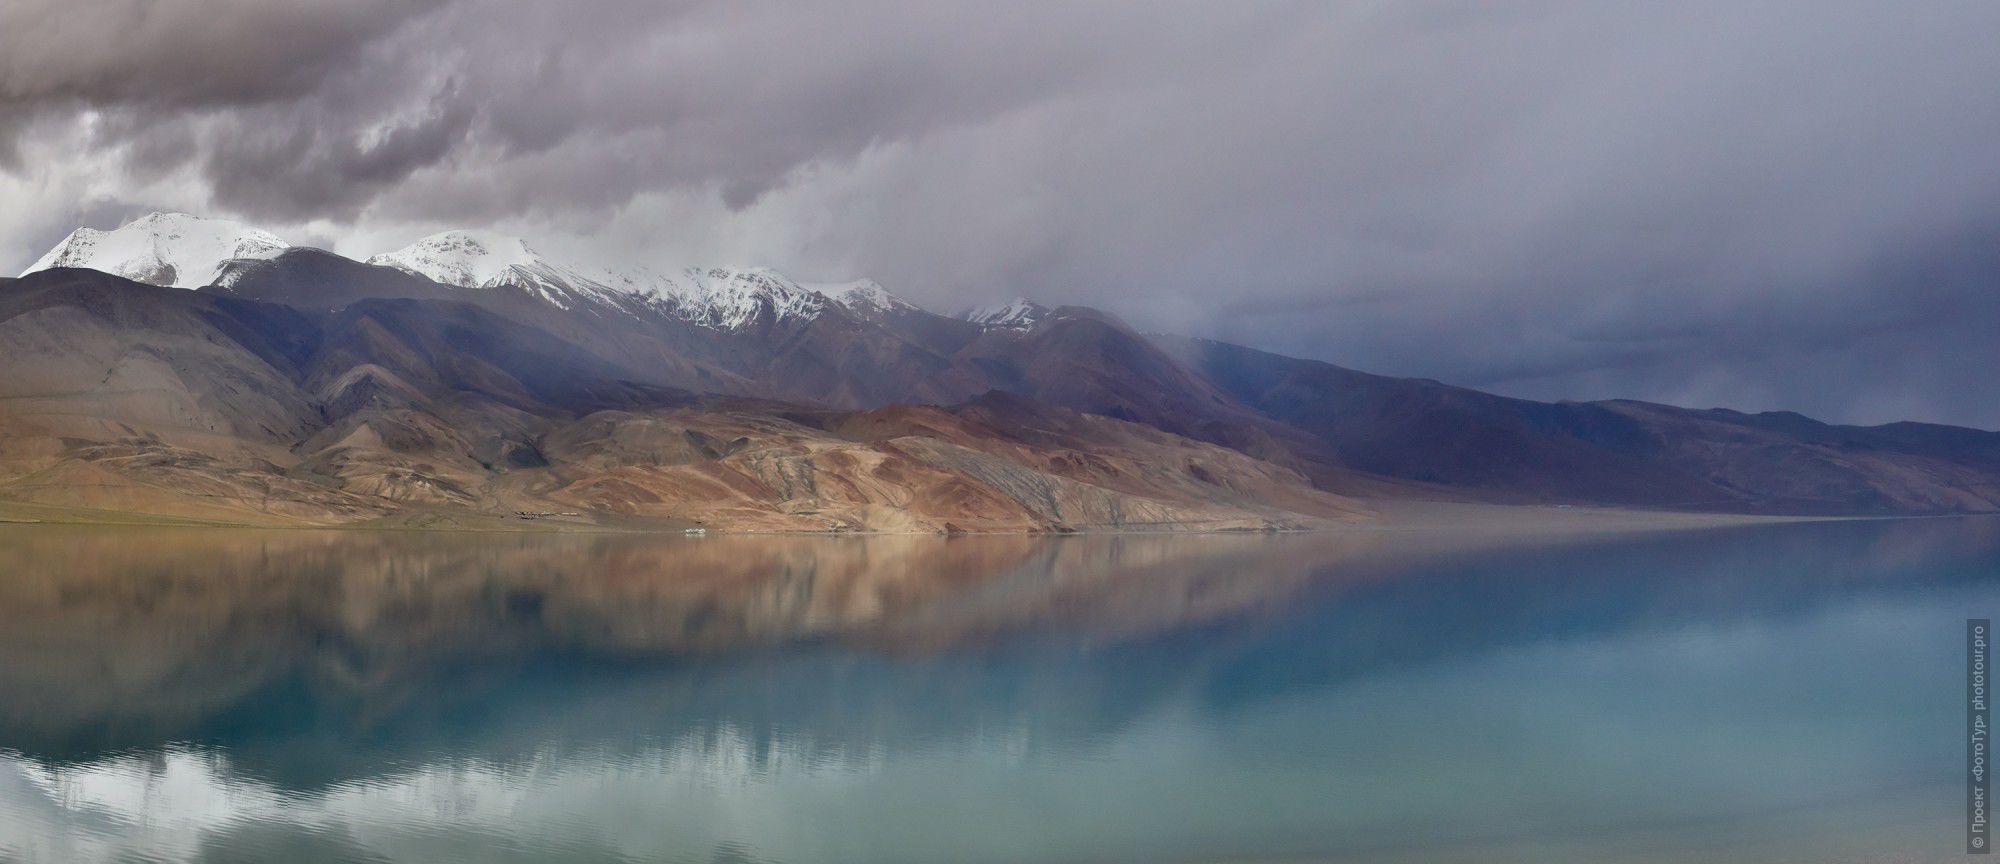 Фотография Нежная сказка Цо Морири. Фототур по высокогорным озерам Тибета, Ладакх.